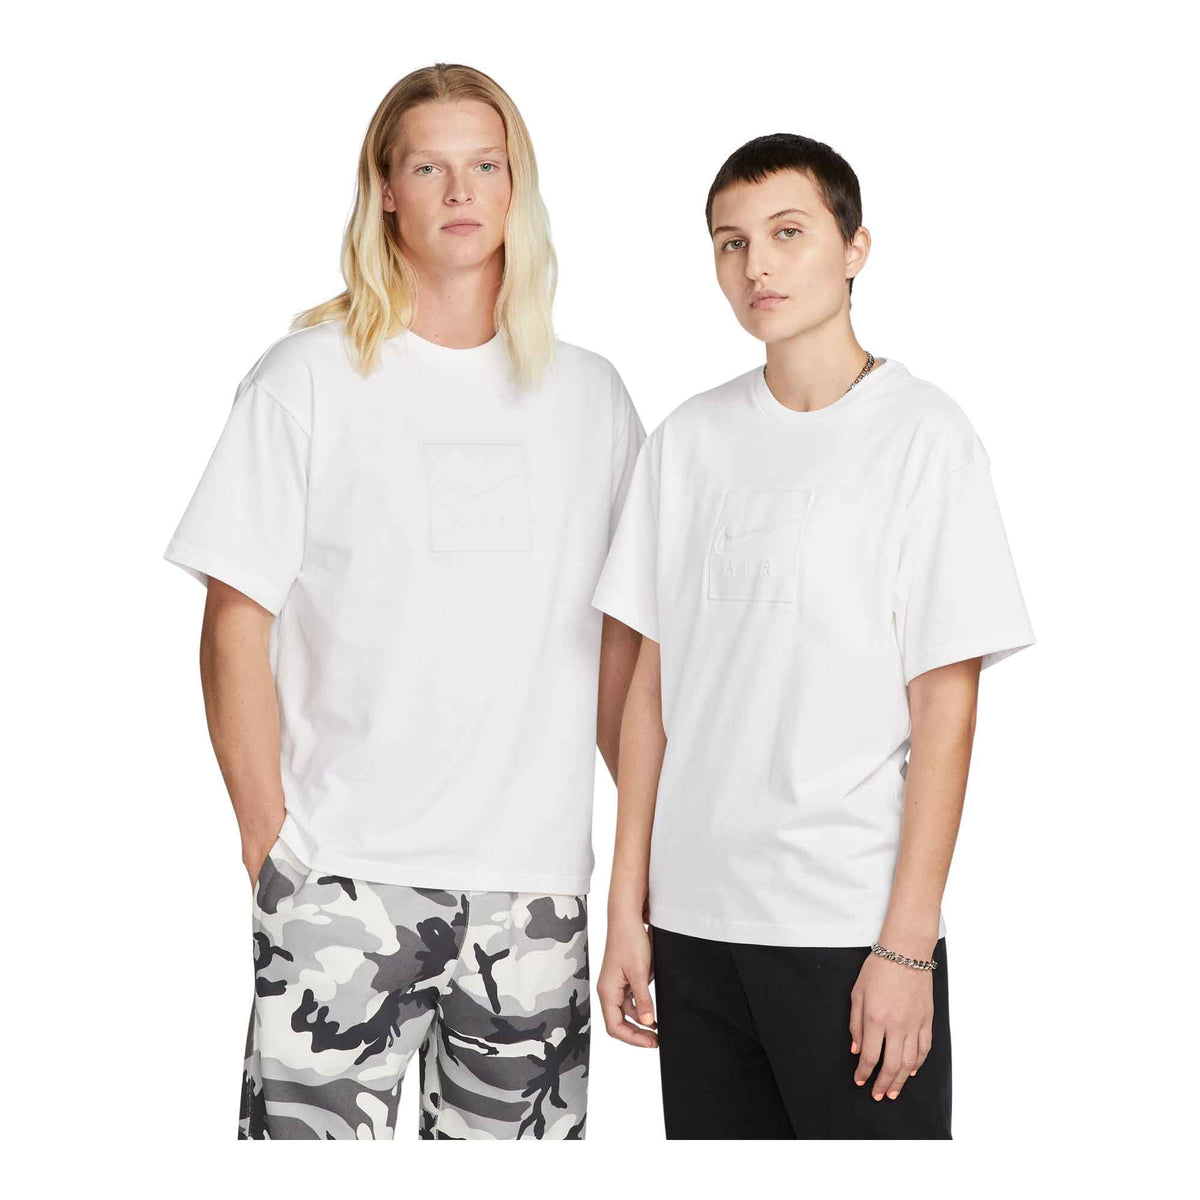 Nike T-Shirt (Unisex)